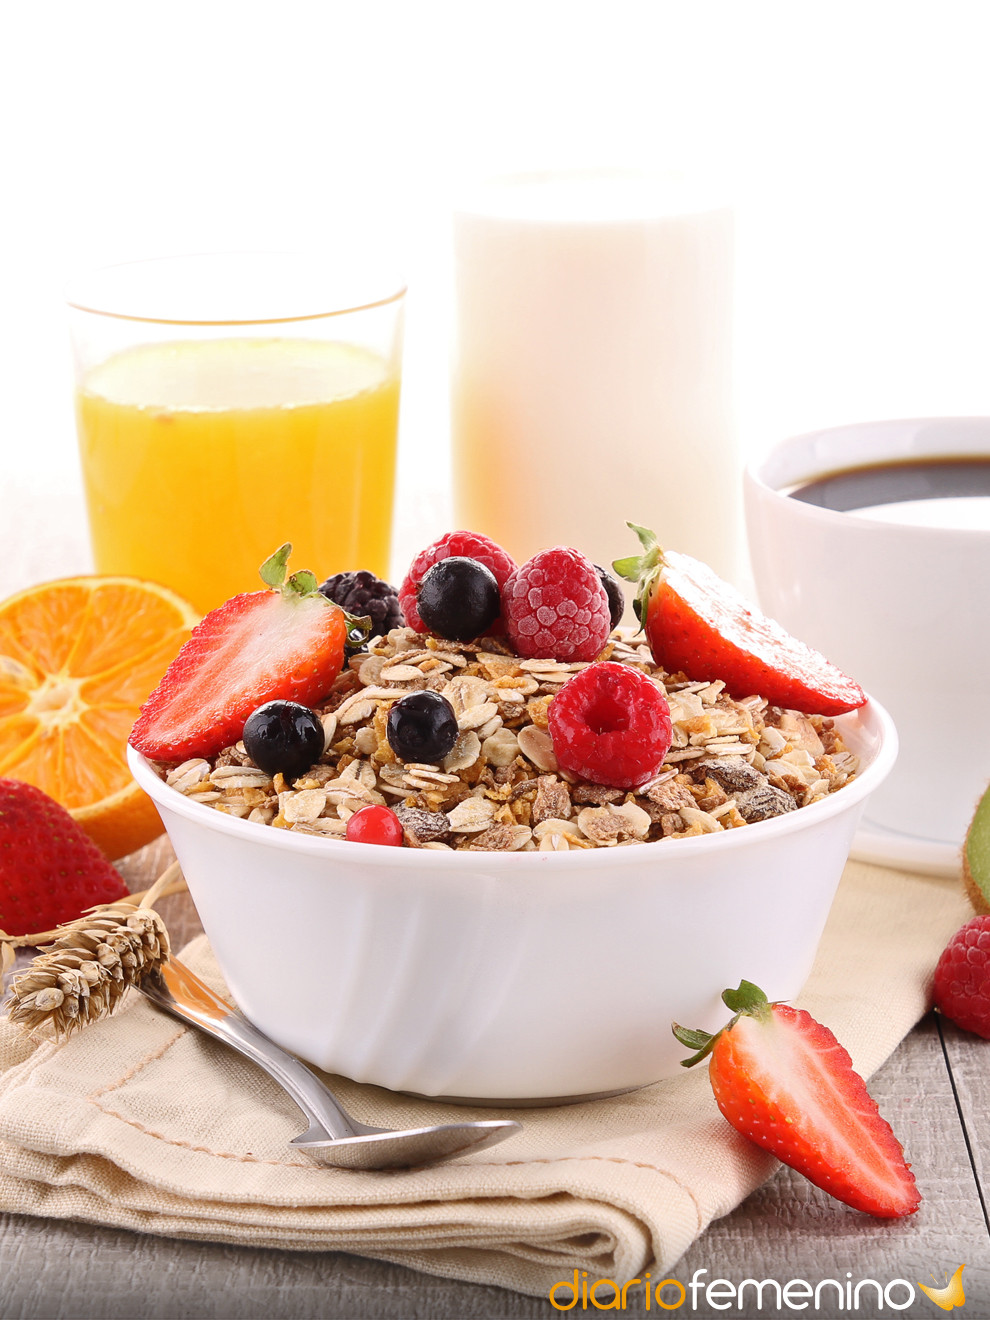 Recetas de desayunos ricos en fibra: evita el estreñimiento y pierde peso